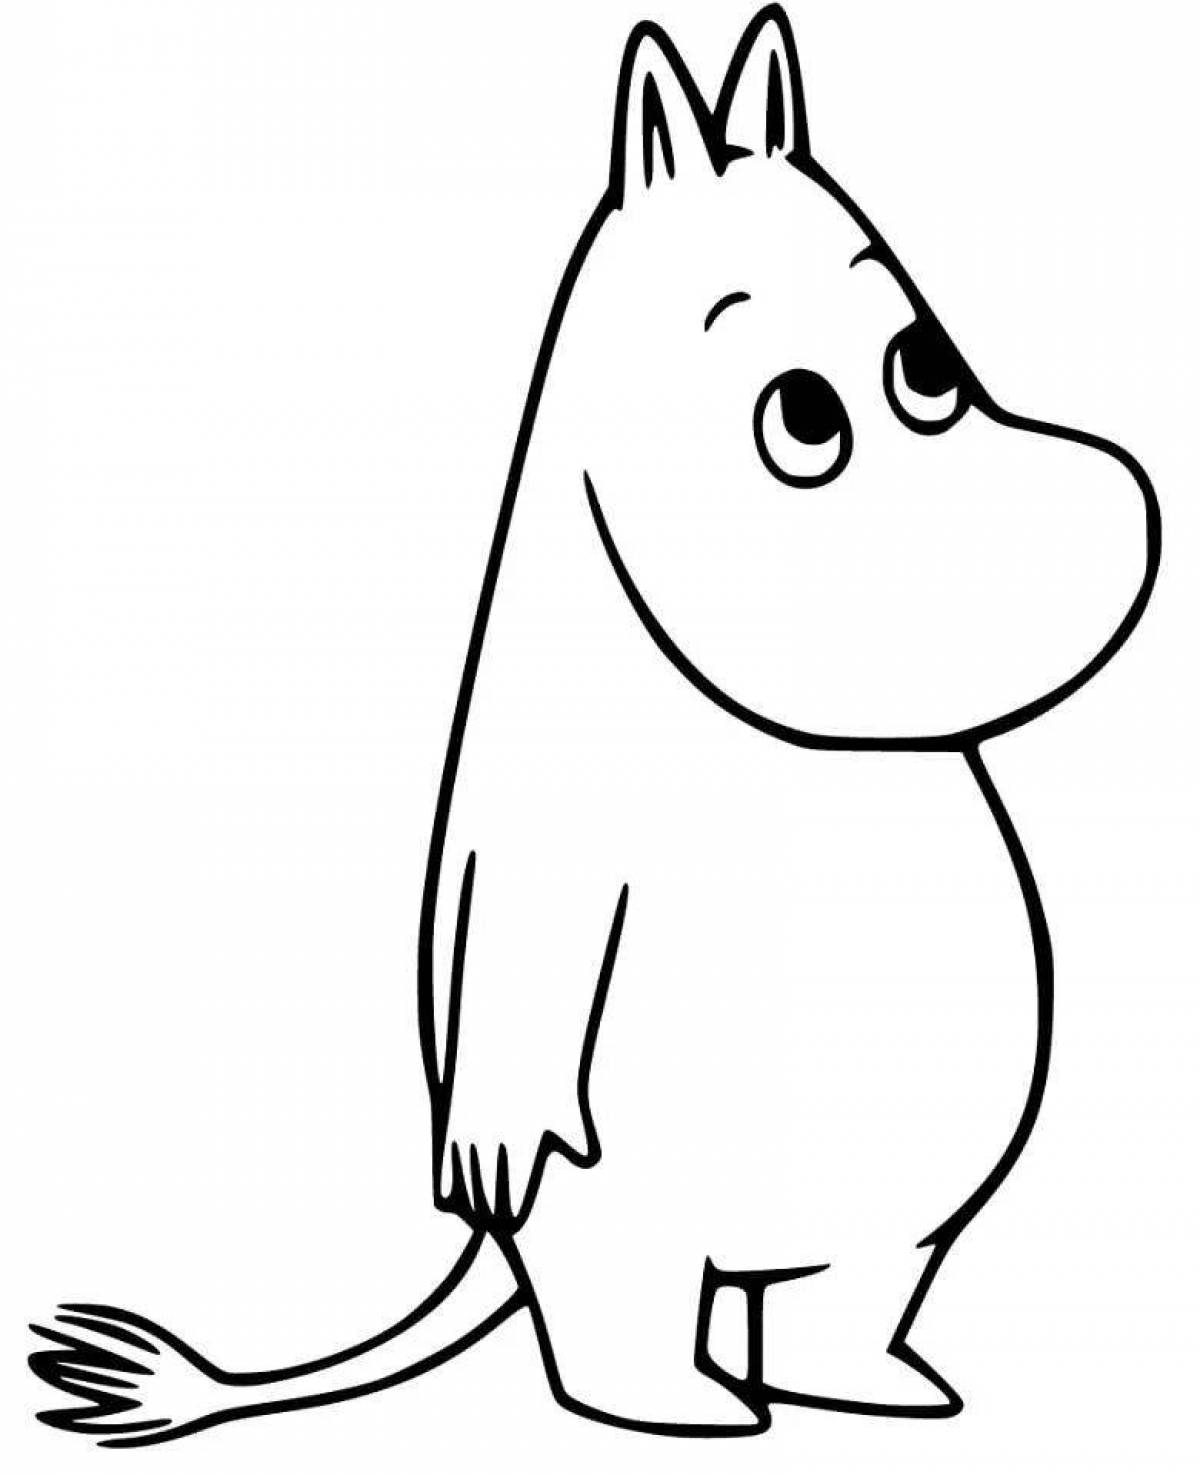 Magic Moomin coloring page